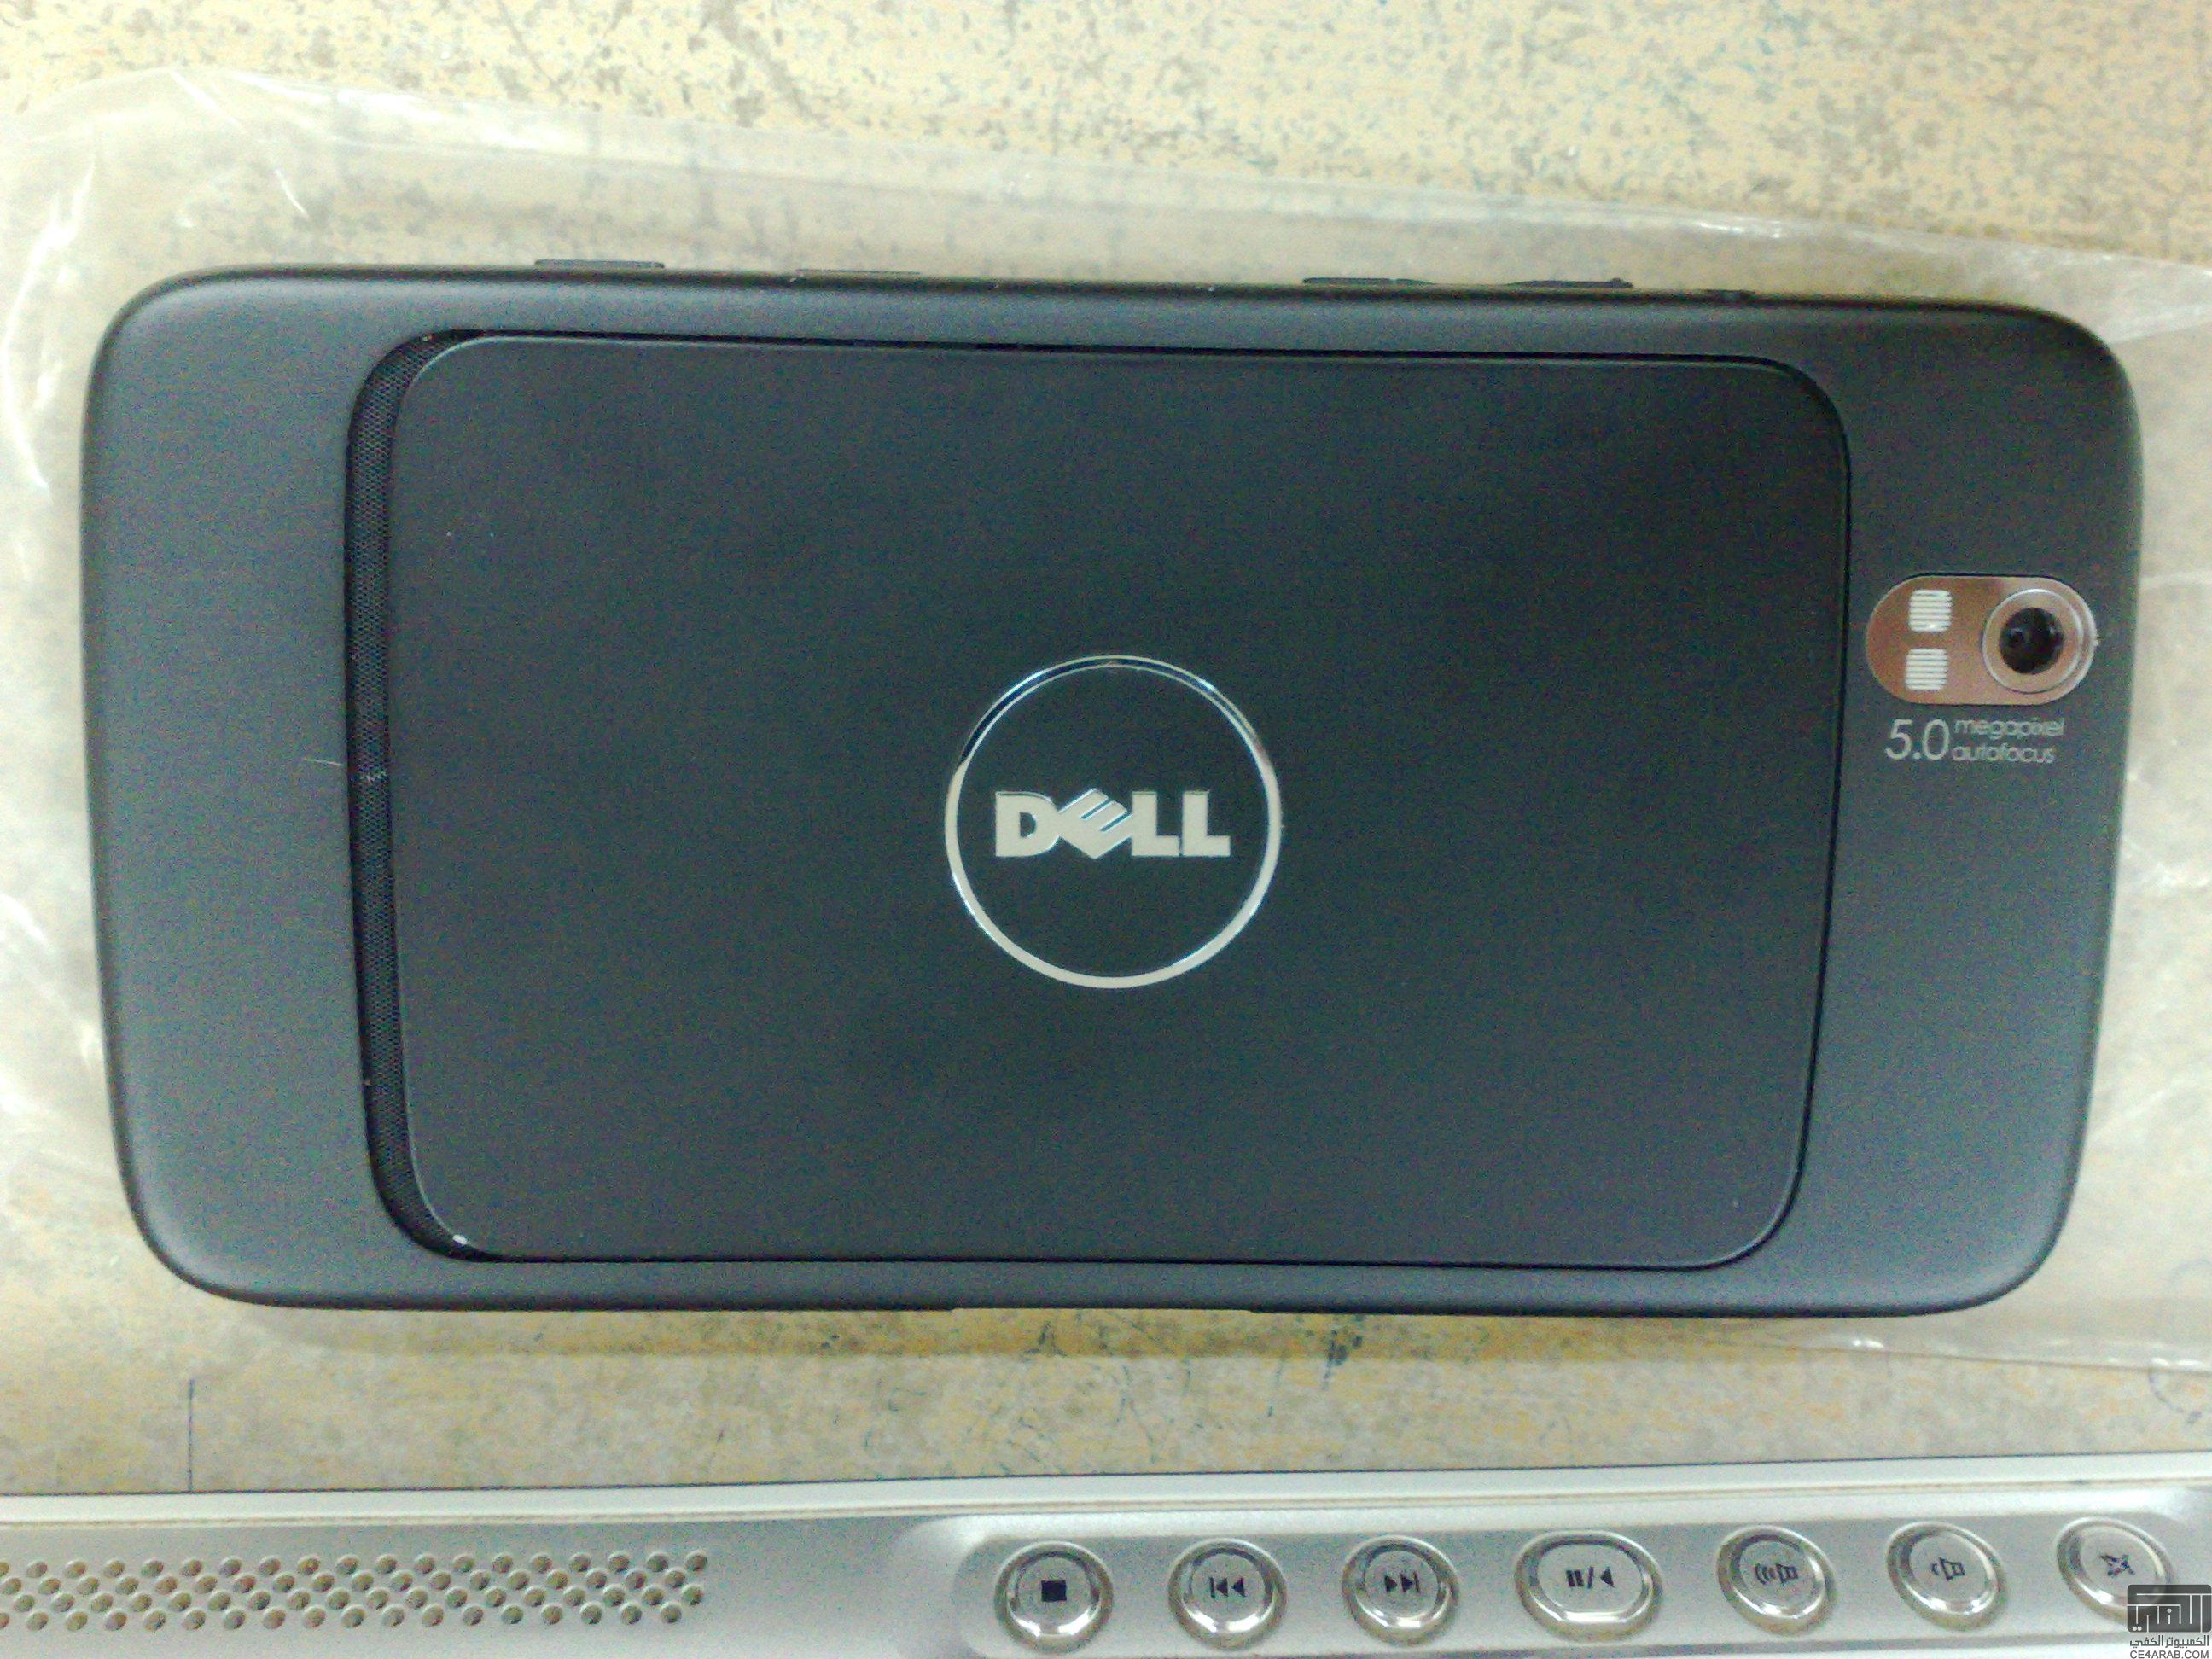 تعريب Dell Streak بتاريخ 18 فبراير 2011